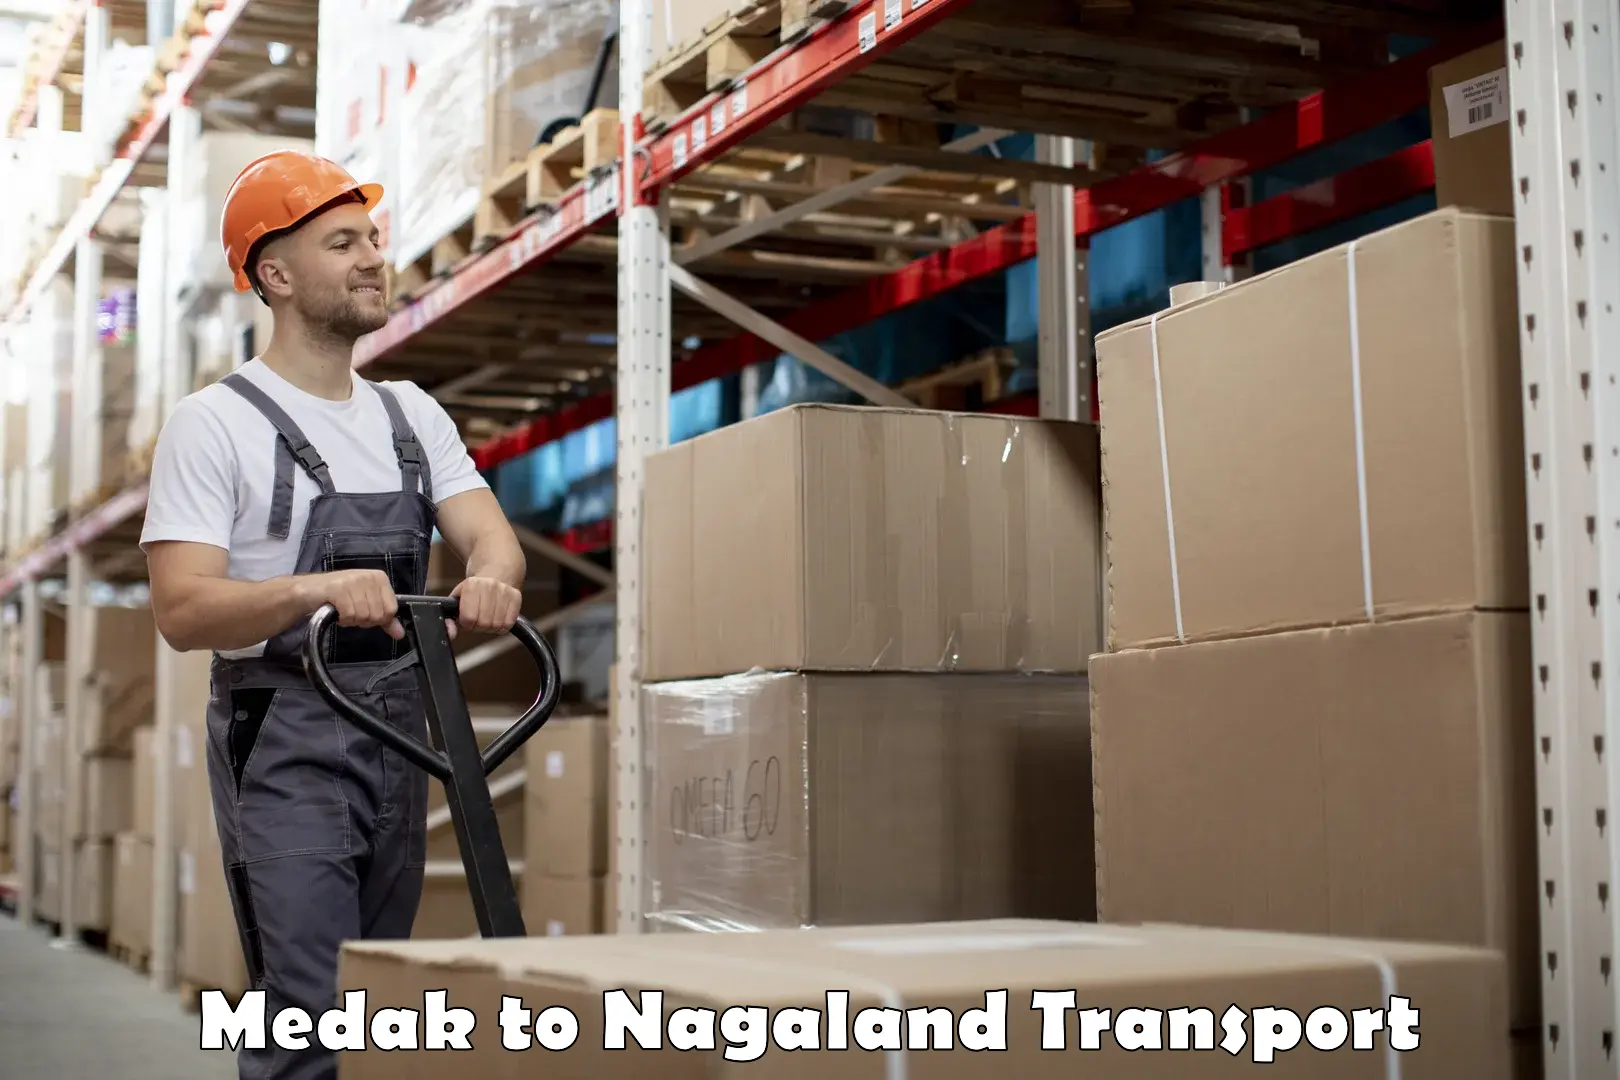 Online transport service Medak to Nagaland